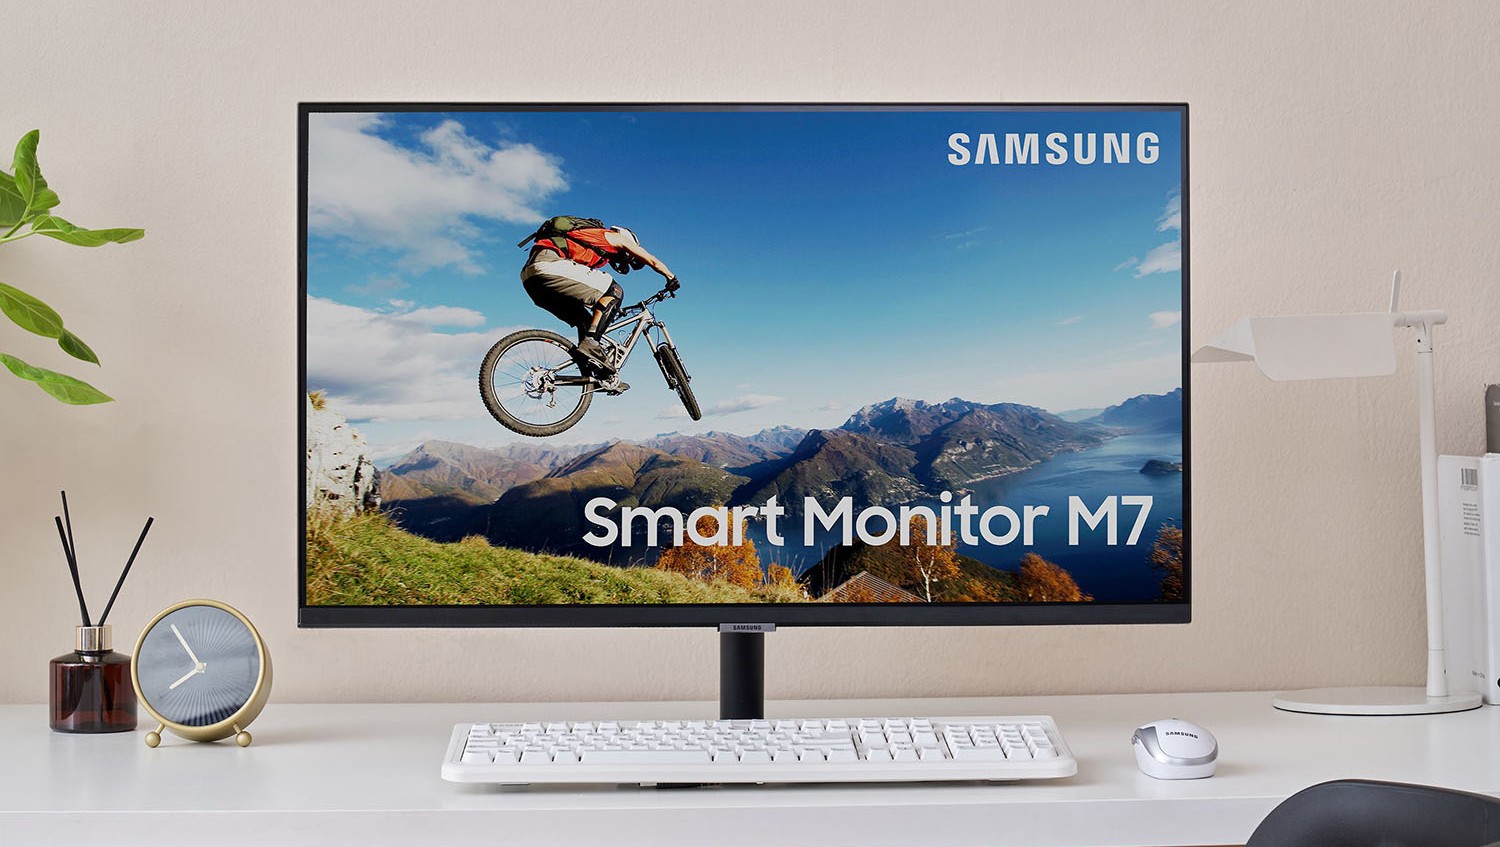 Samsung выпустила новые умные мониторы Smart Monitor